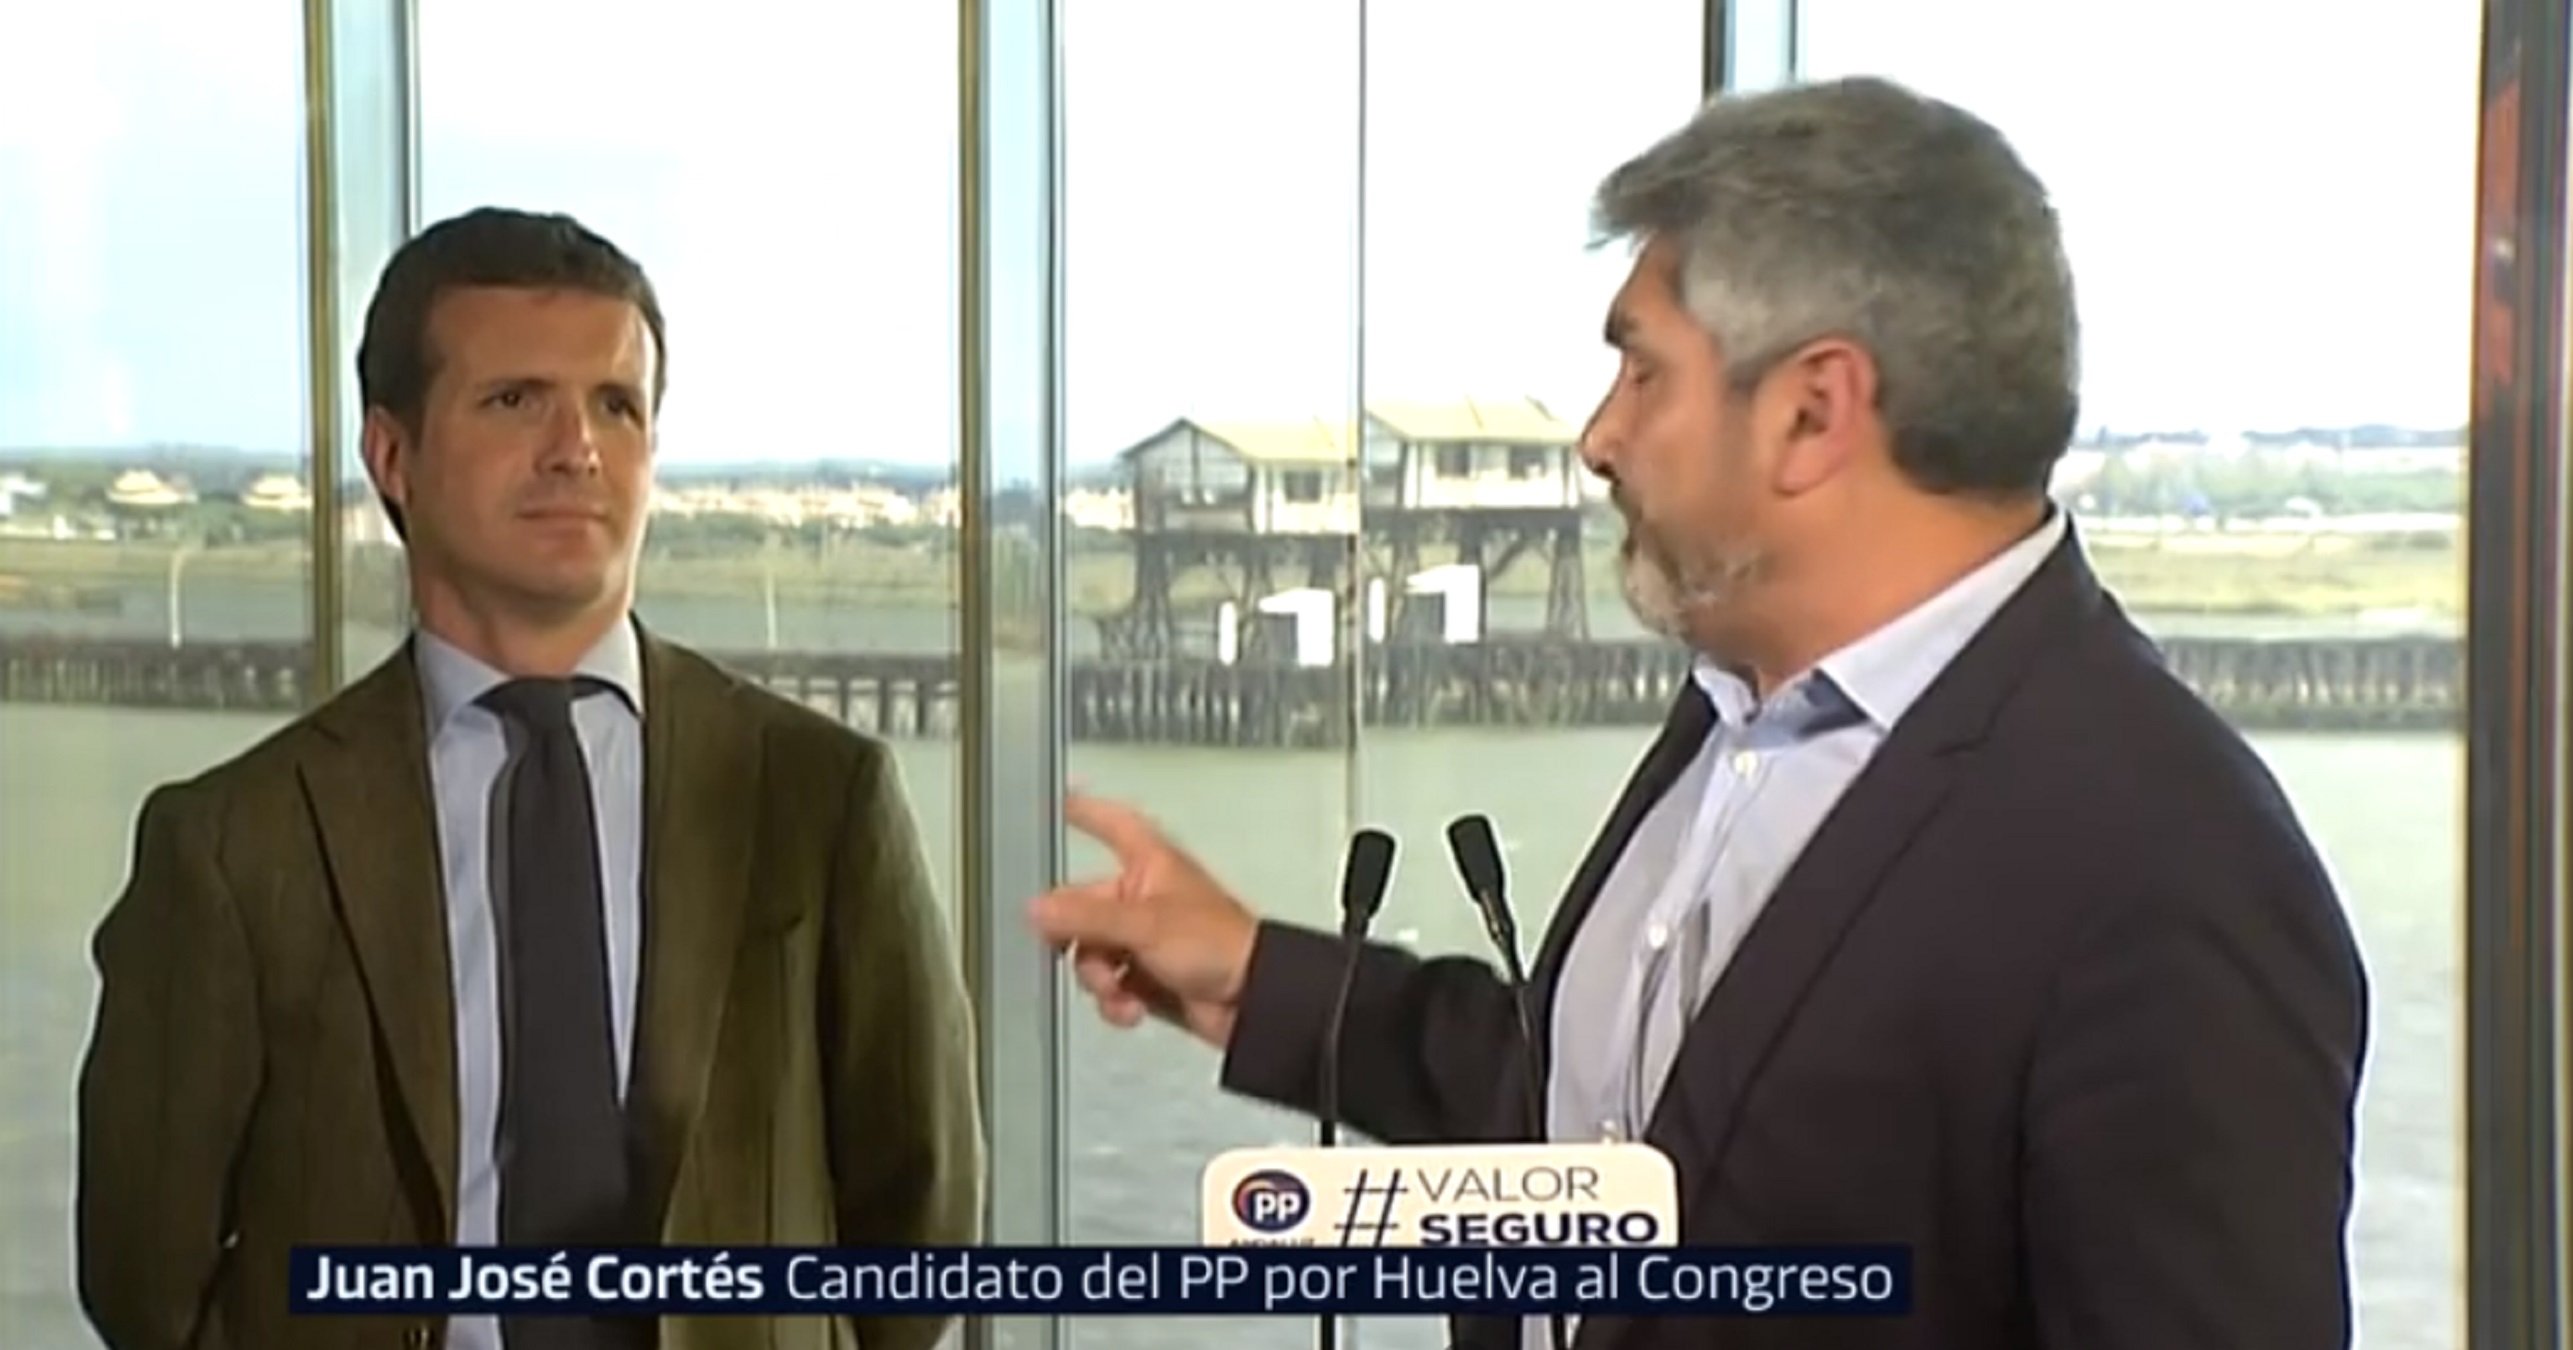 VÍDEO: Patético mitin de un candidato del PP confundiendo a Casado (y él, irado)